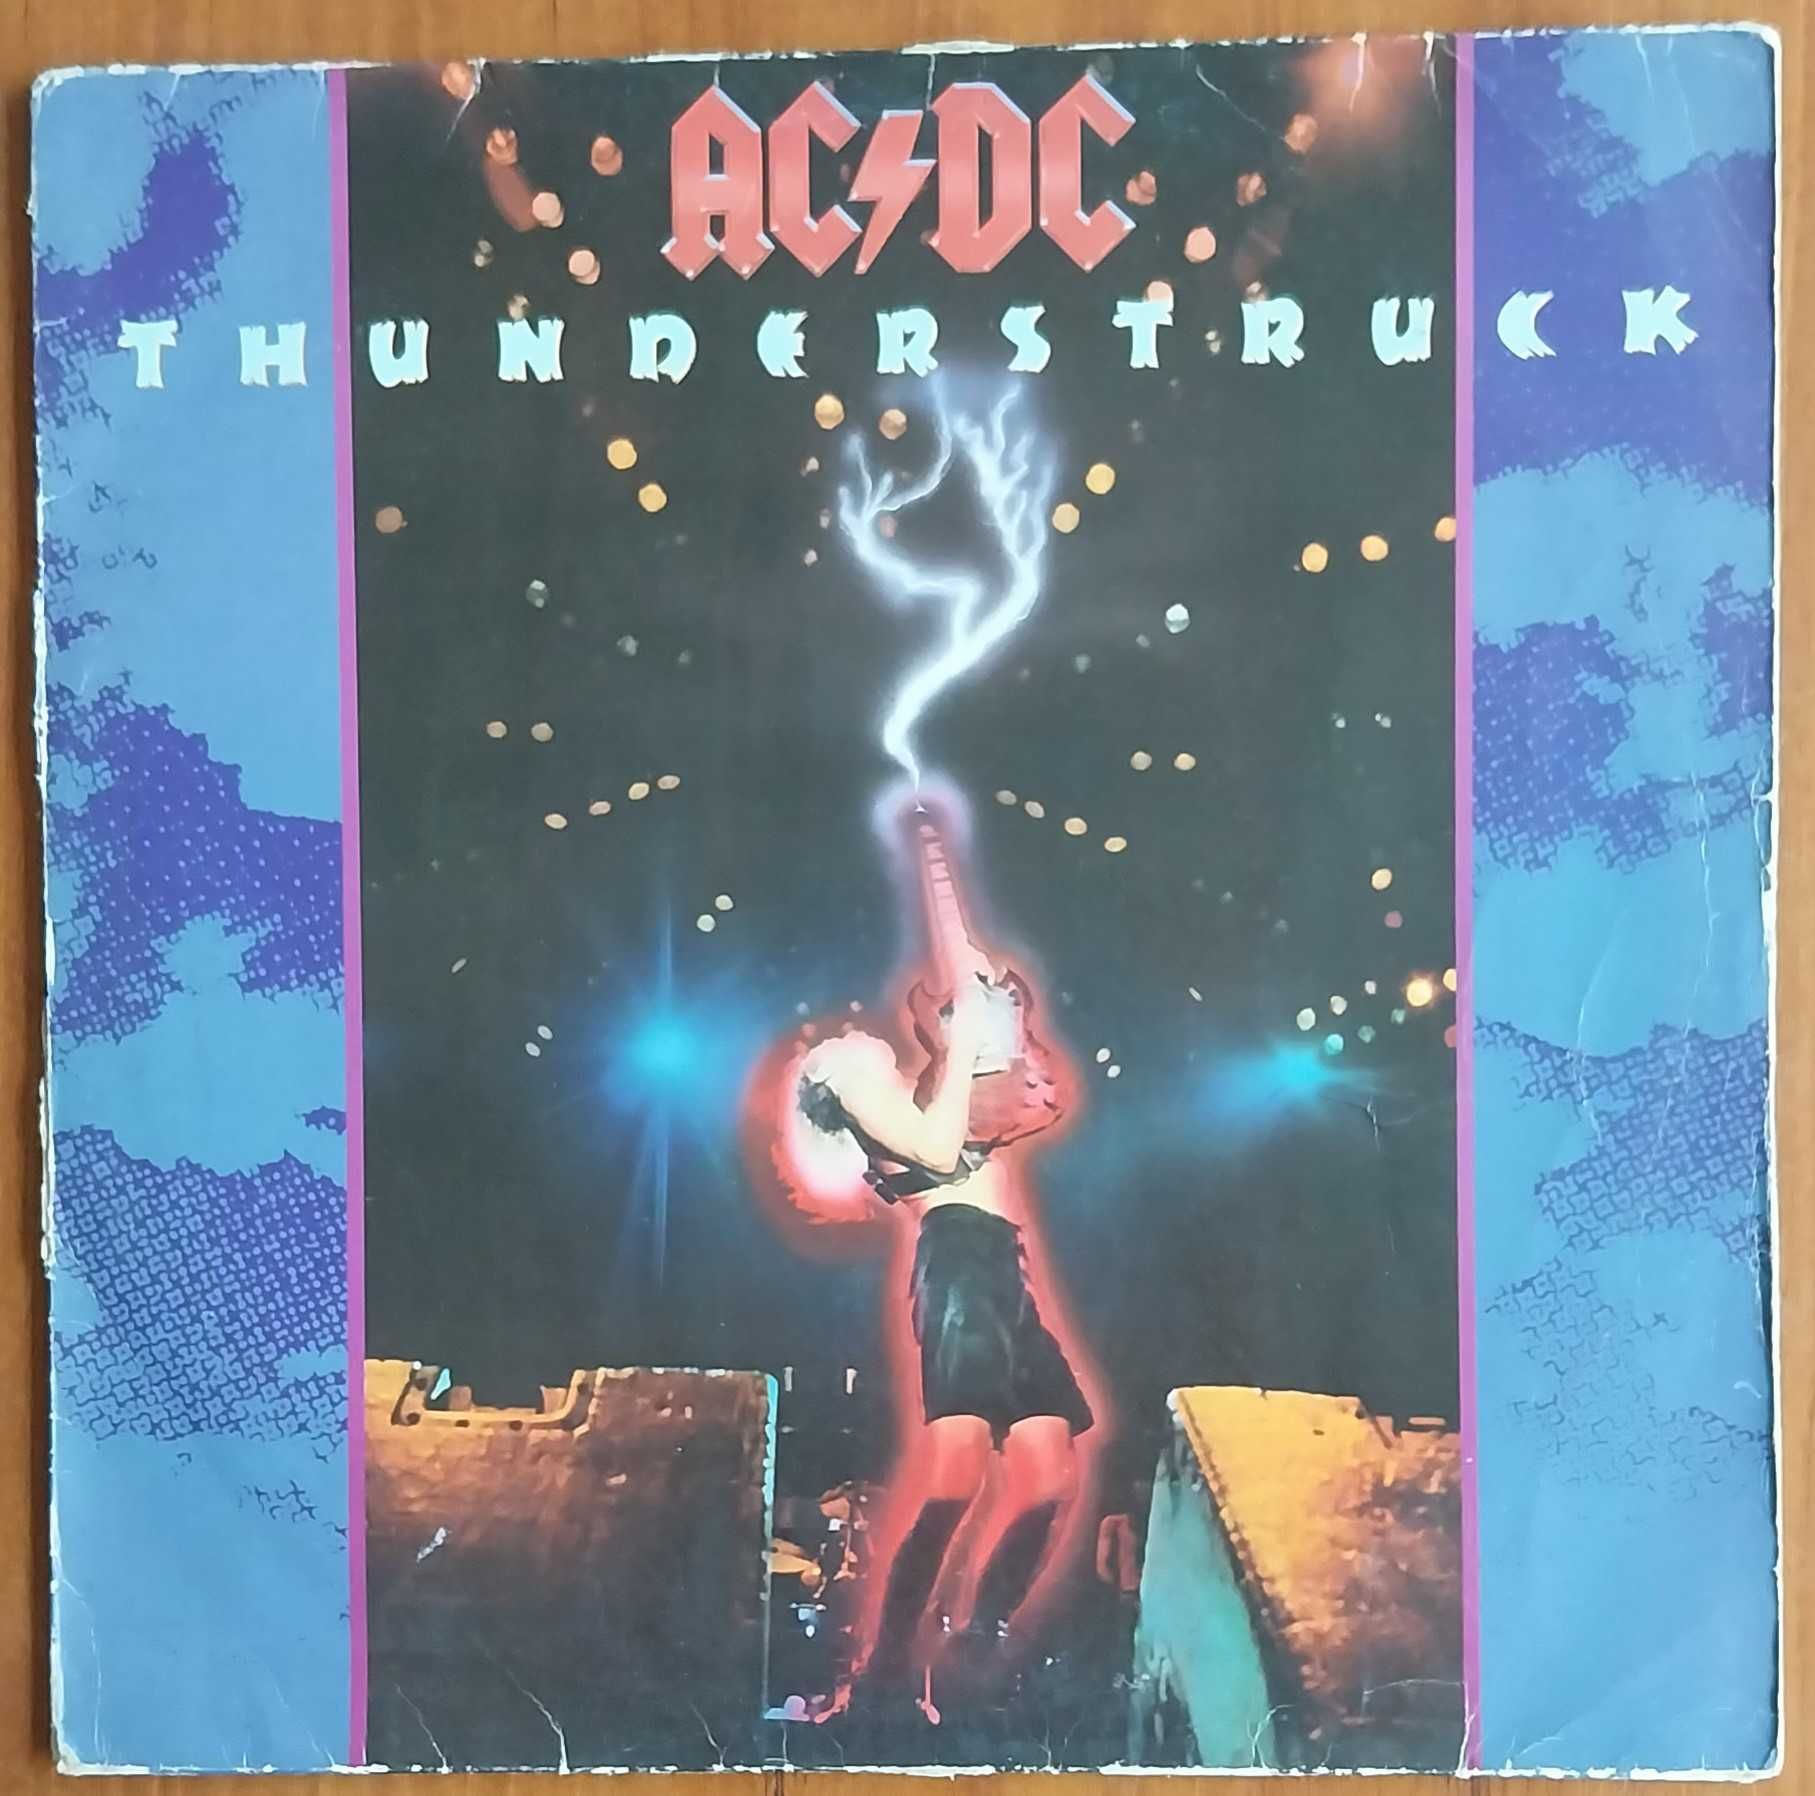 vinil: AC/DC “Thunderstruck”